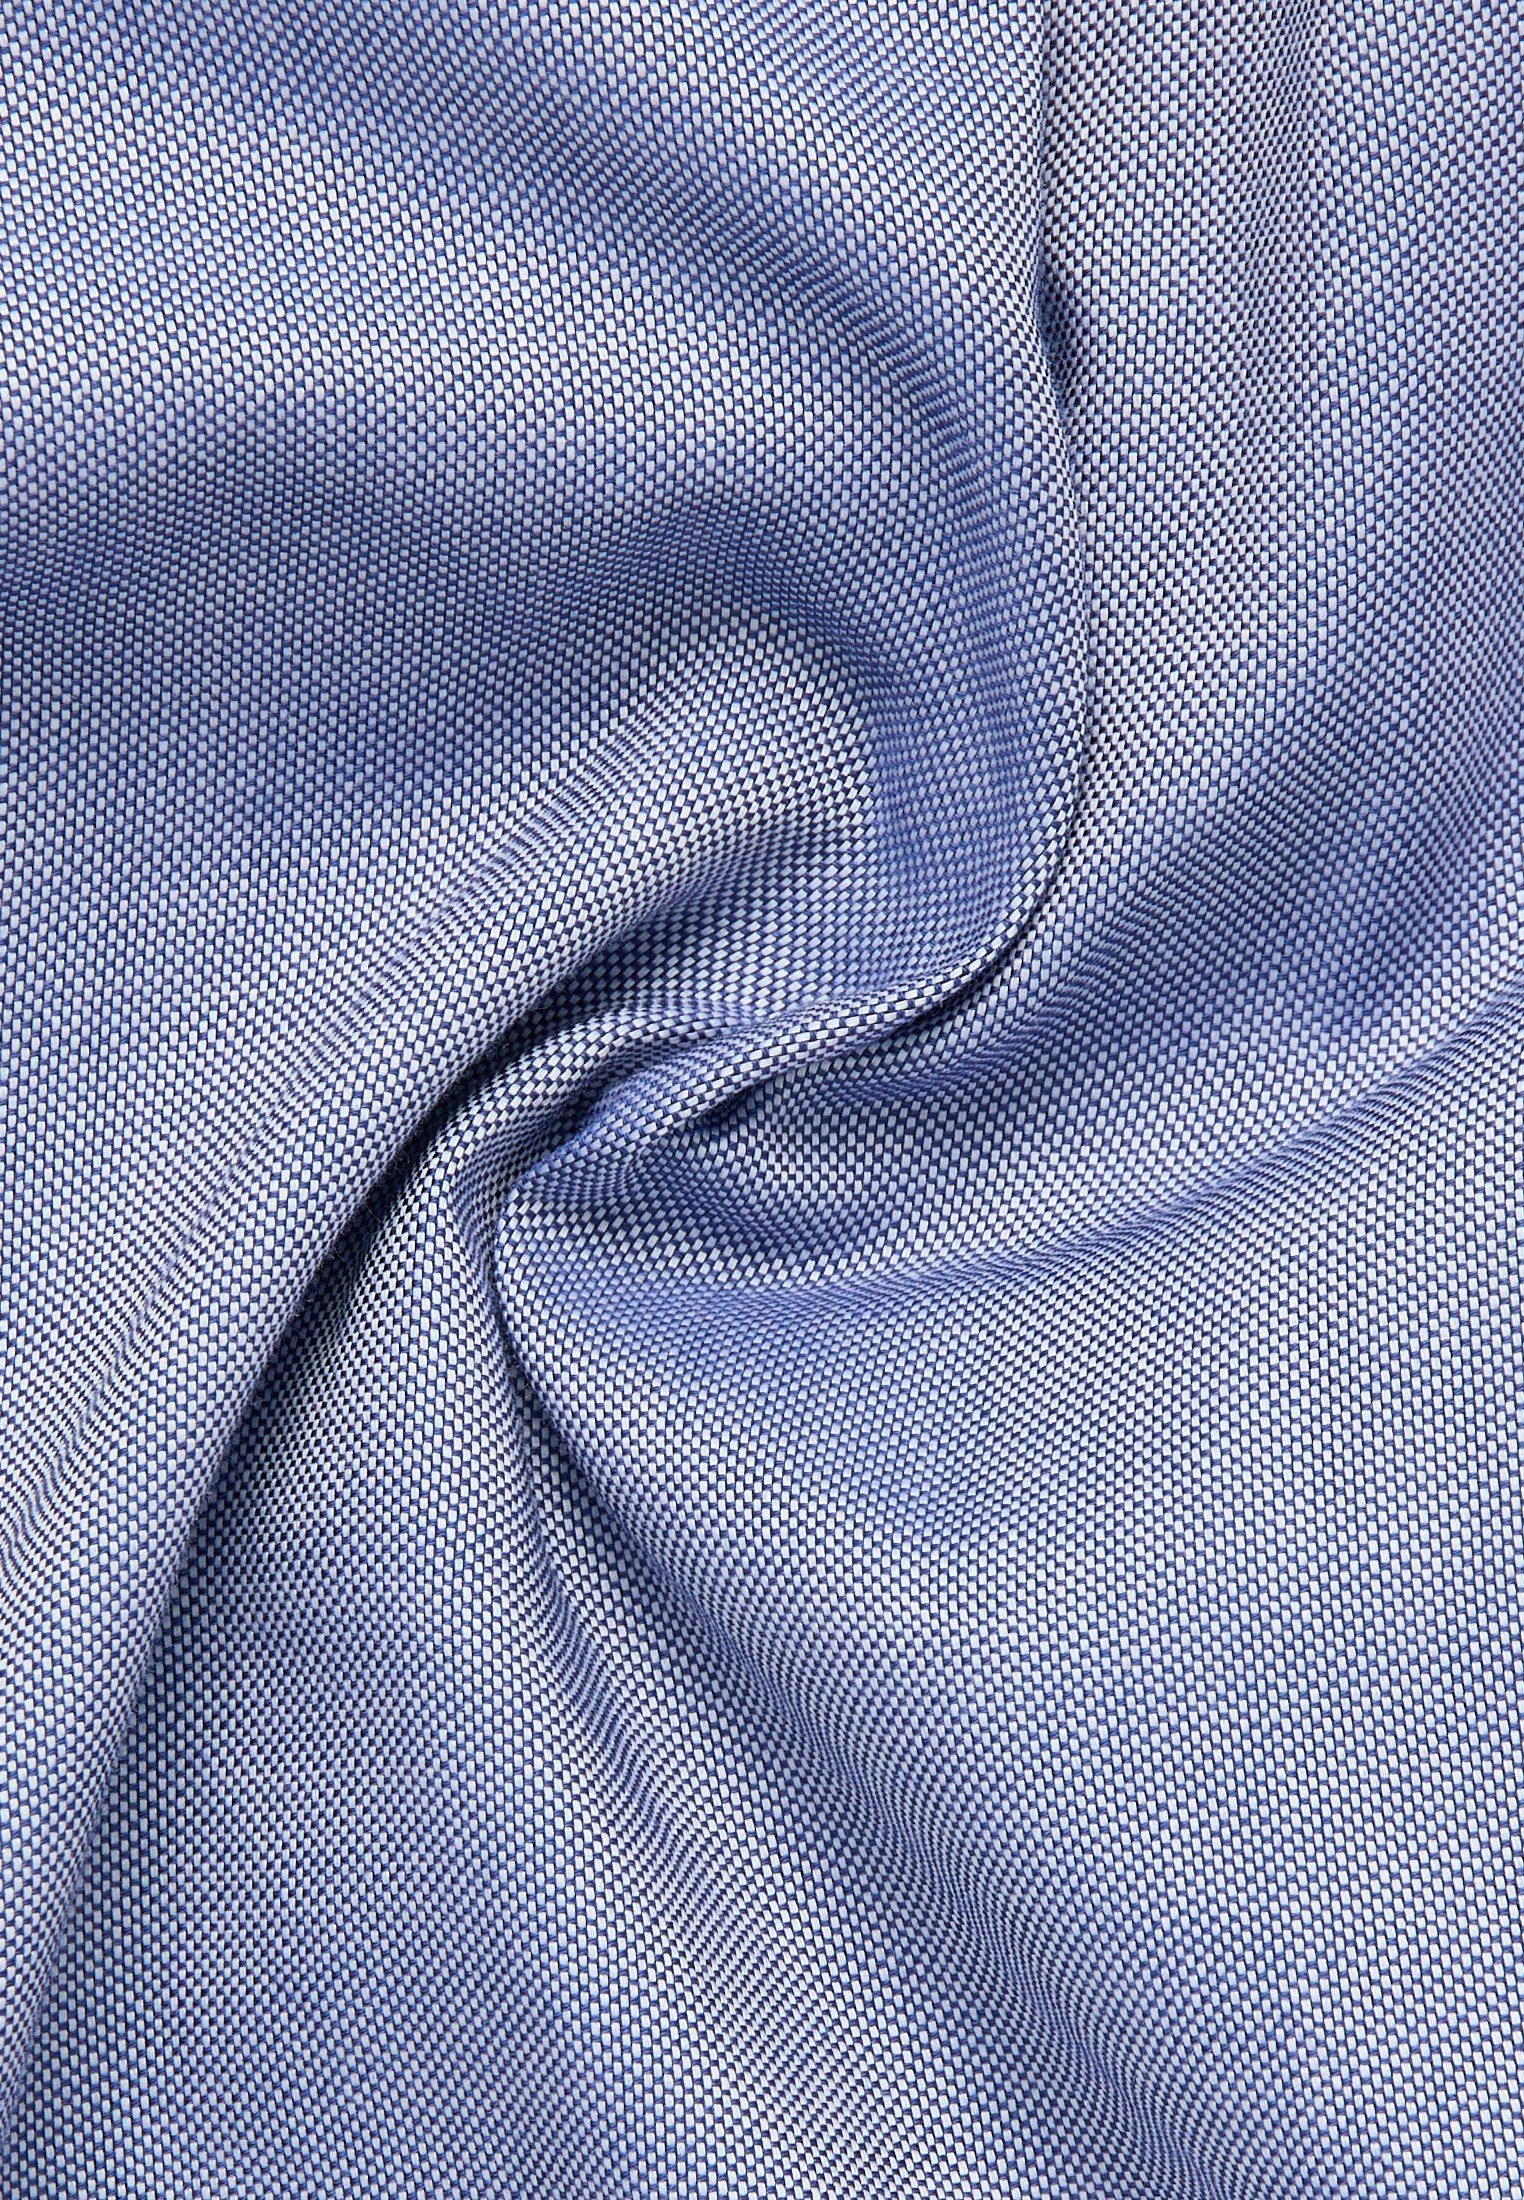 Shirtbluse Eterna royal REGULAR blau FIT